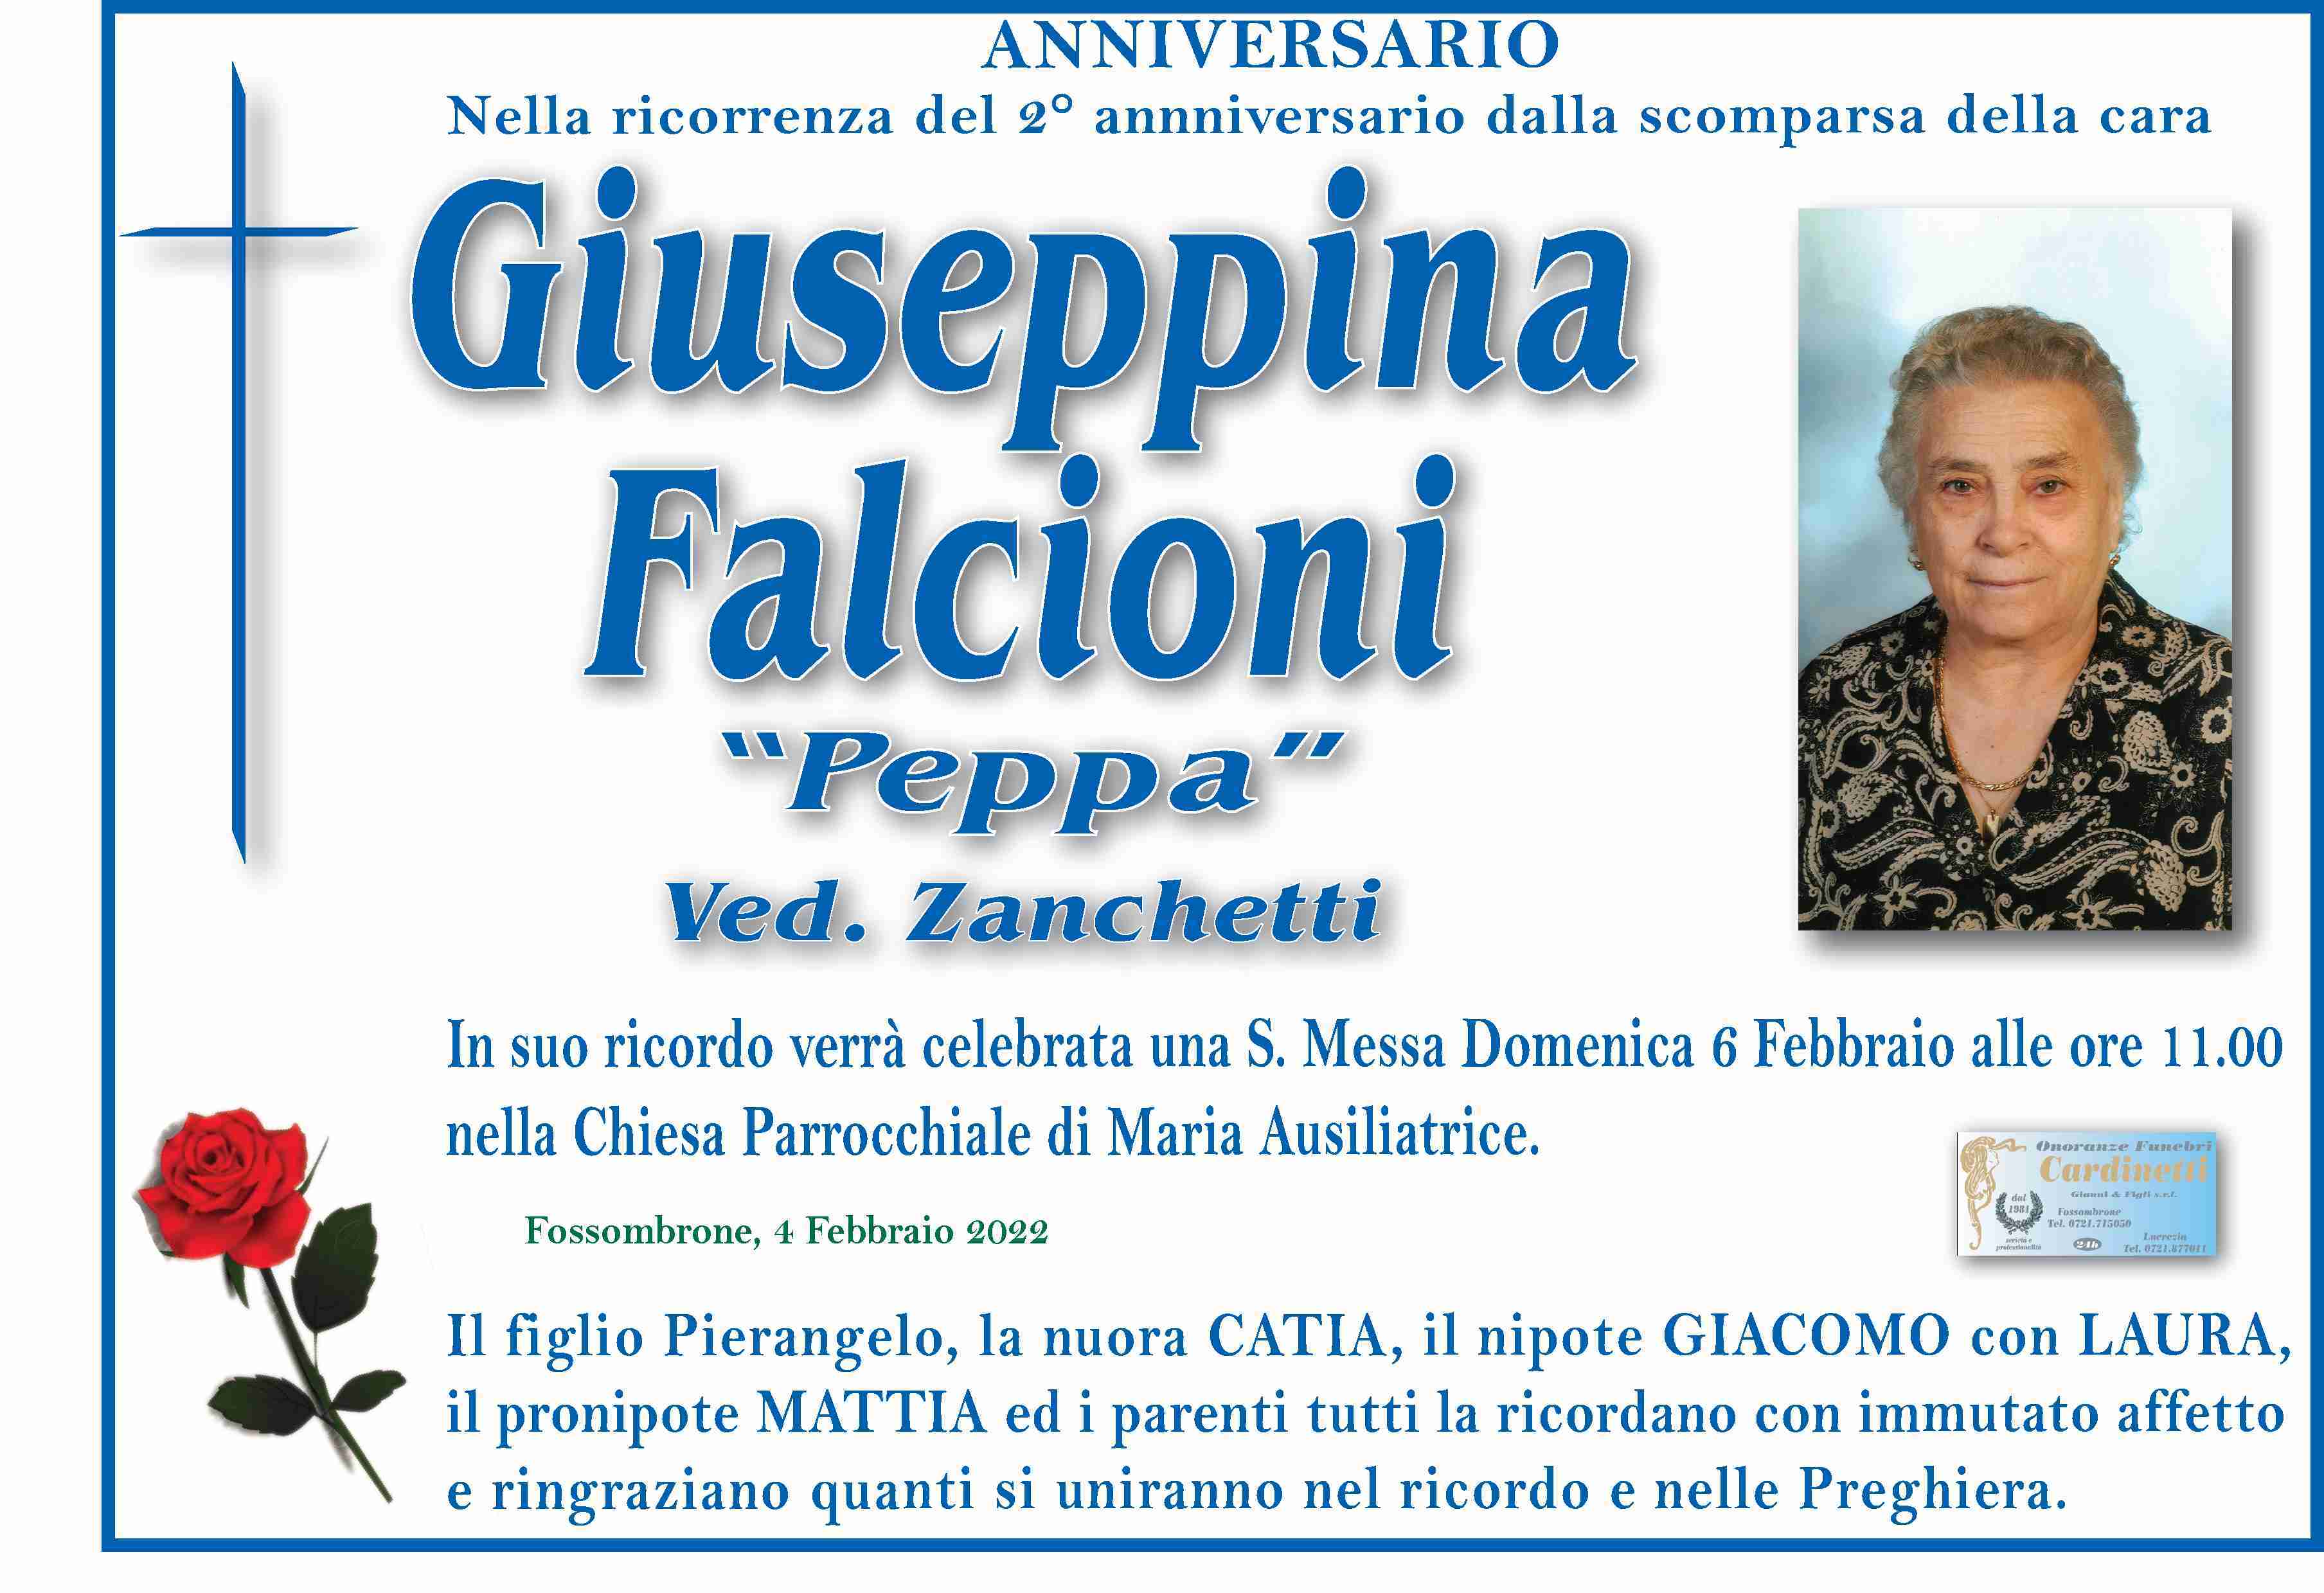 Giuseppina Falcioni